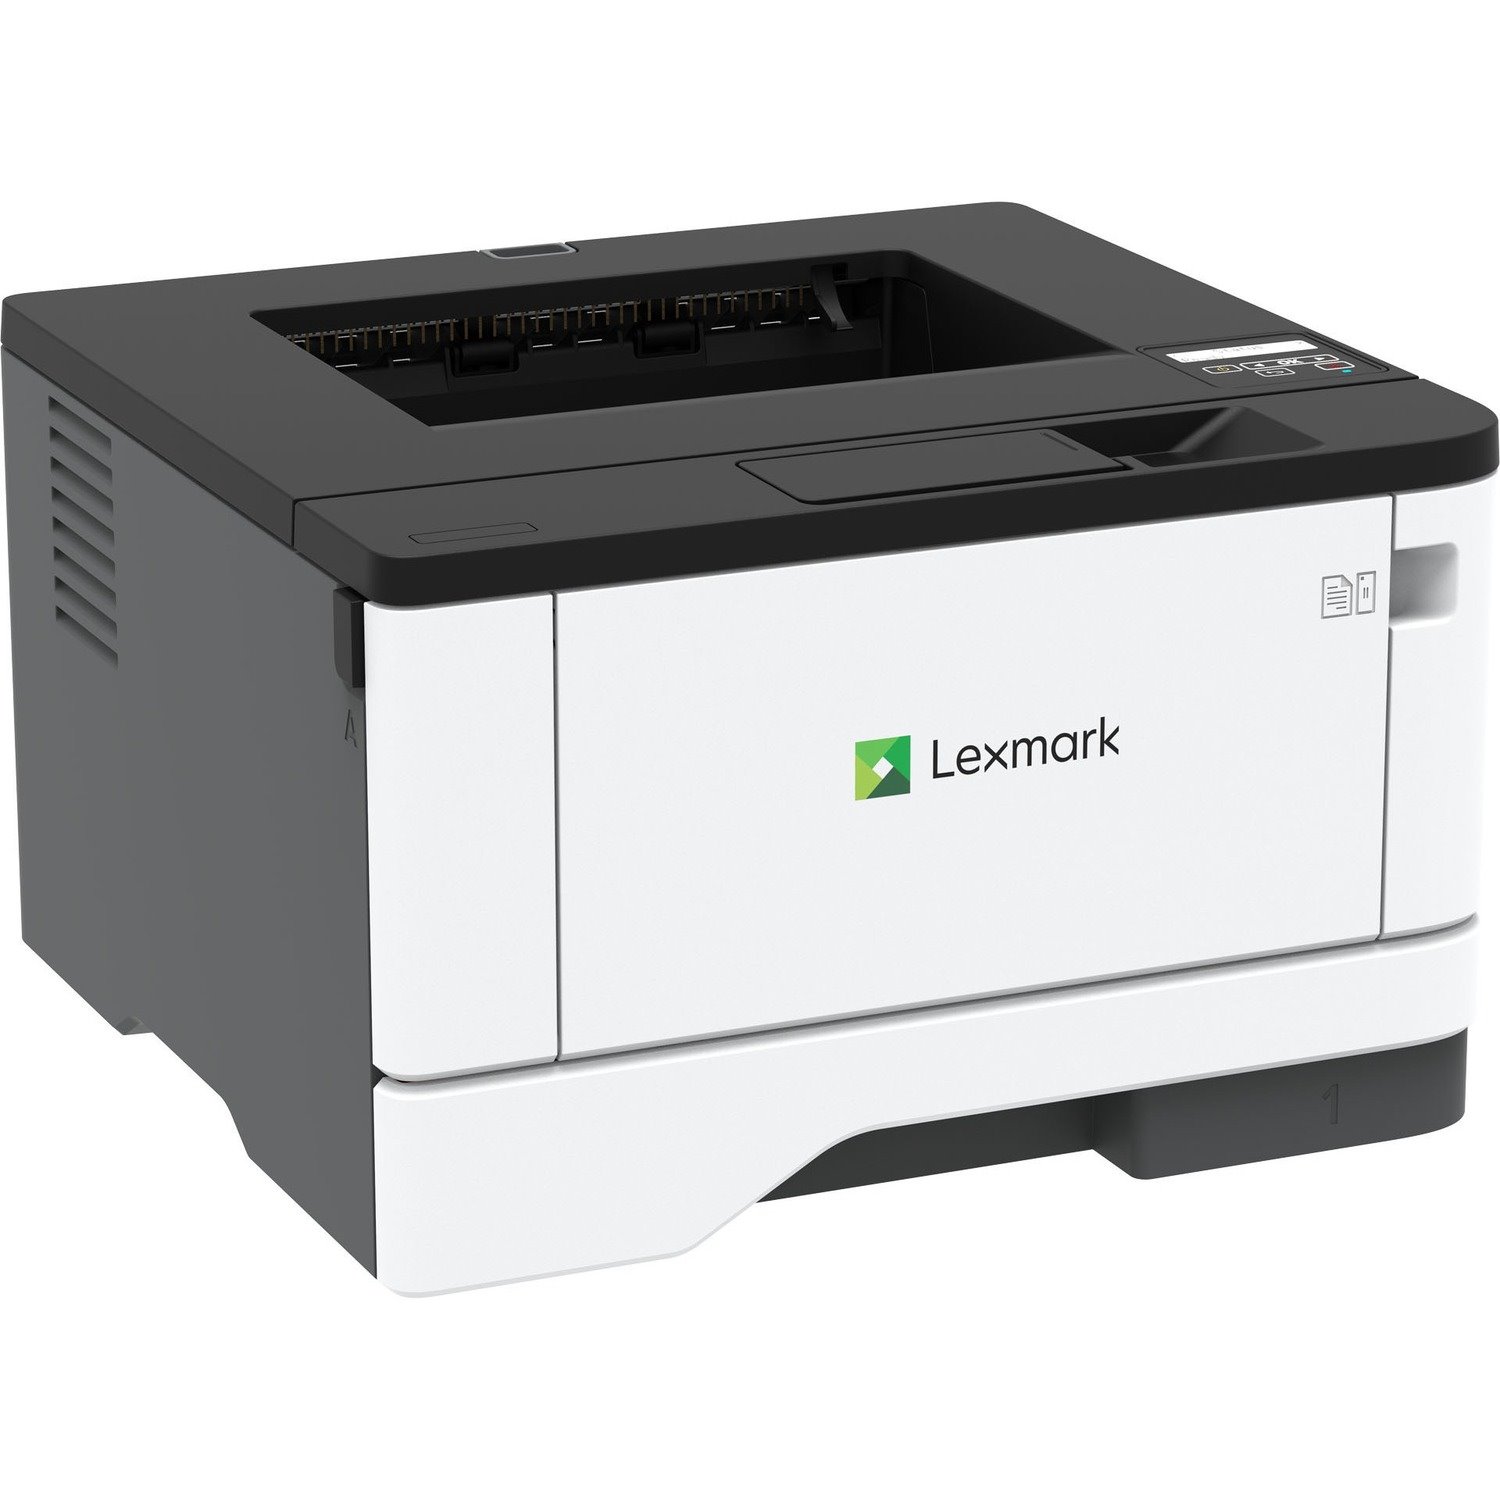 Lexmark MS331dn Desktop Wired Laser Printer - Monochrome